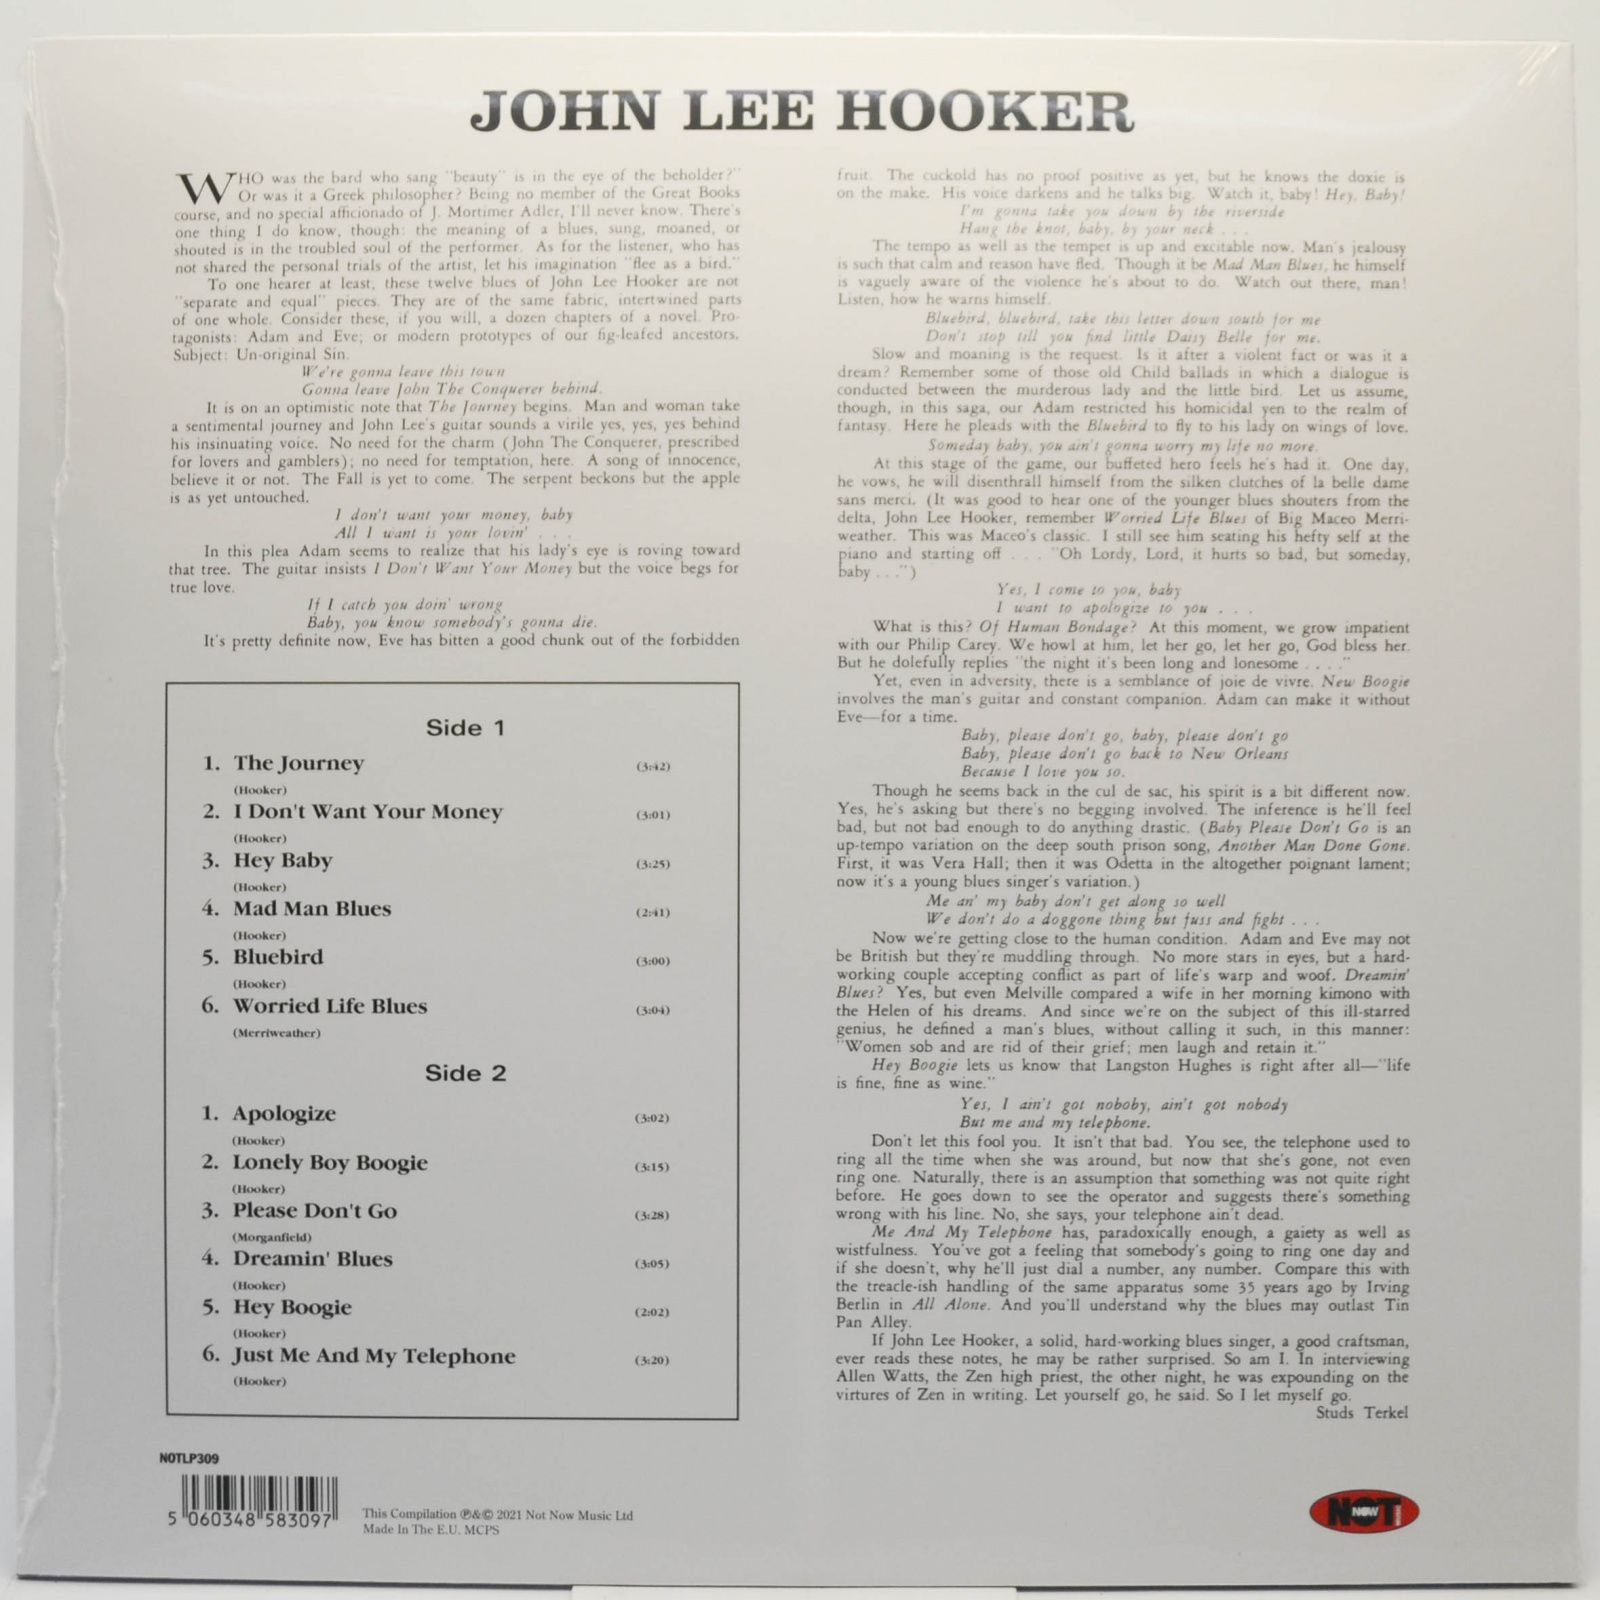 John Lee Hooker — Plays & Sings The Blues, 1961